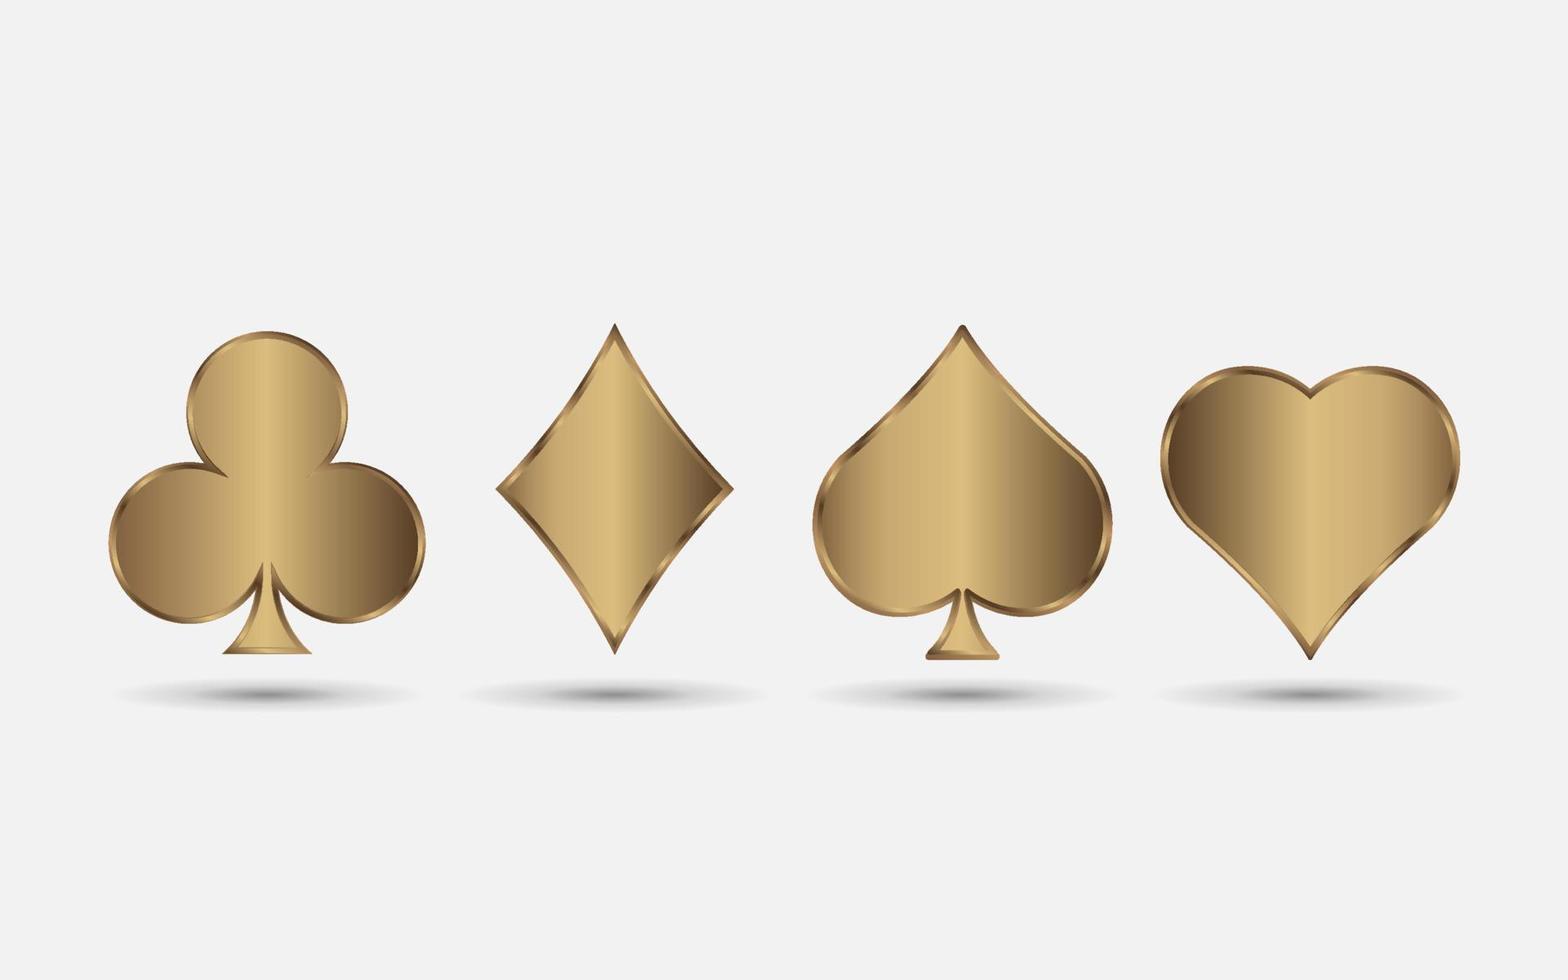 goldene spielkartenanzüge, spade, herz, club und diamantvektorsatz für ihr design oder logo. realistische deckkarten lokalisiert auf weißem hintergrund vektor